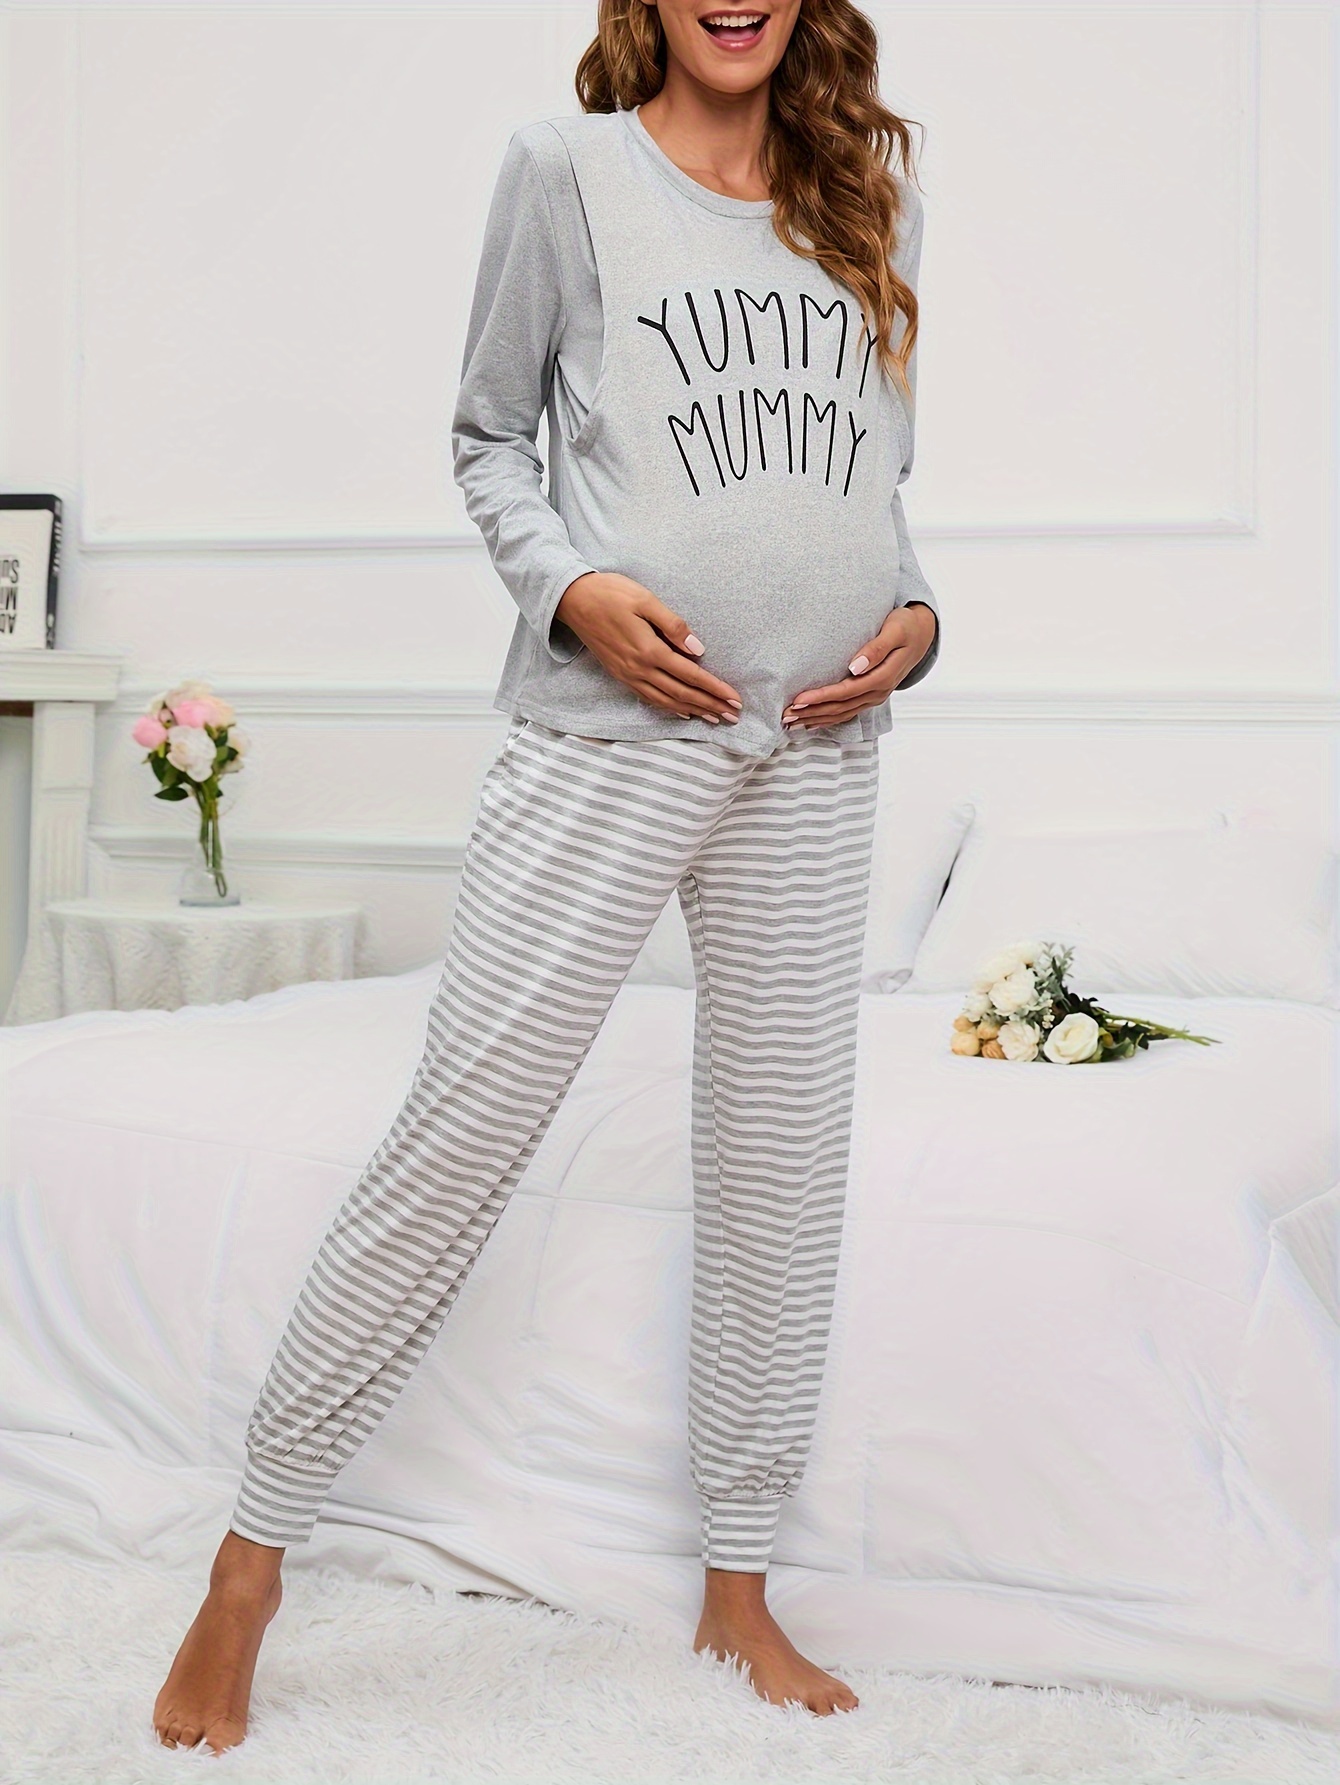 Ensemble pyjama maternité pour allaitement / Maternité Be Mine pour bébé /  Incontournable sac d'hôpital / Cadeau de baby shower / Expédition rapide à  partir du CT / Willow -  France